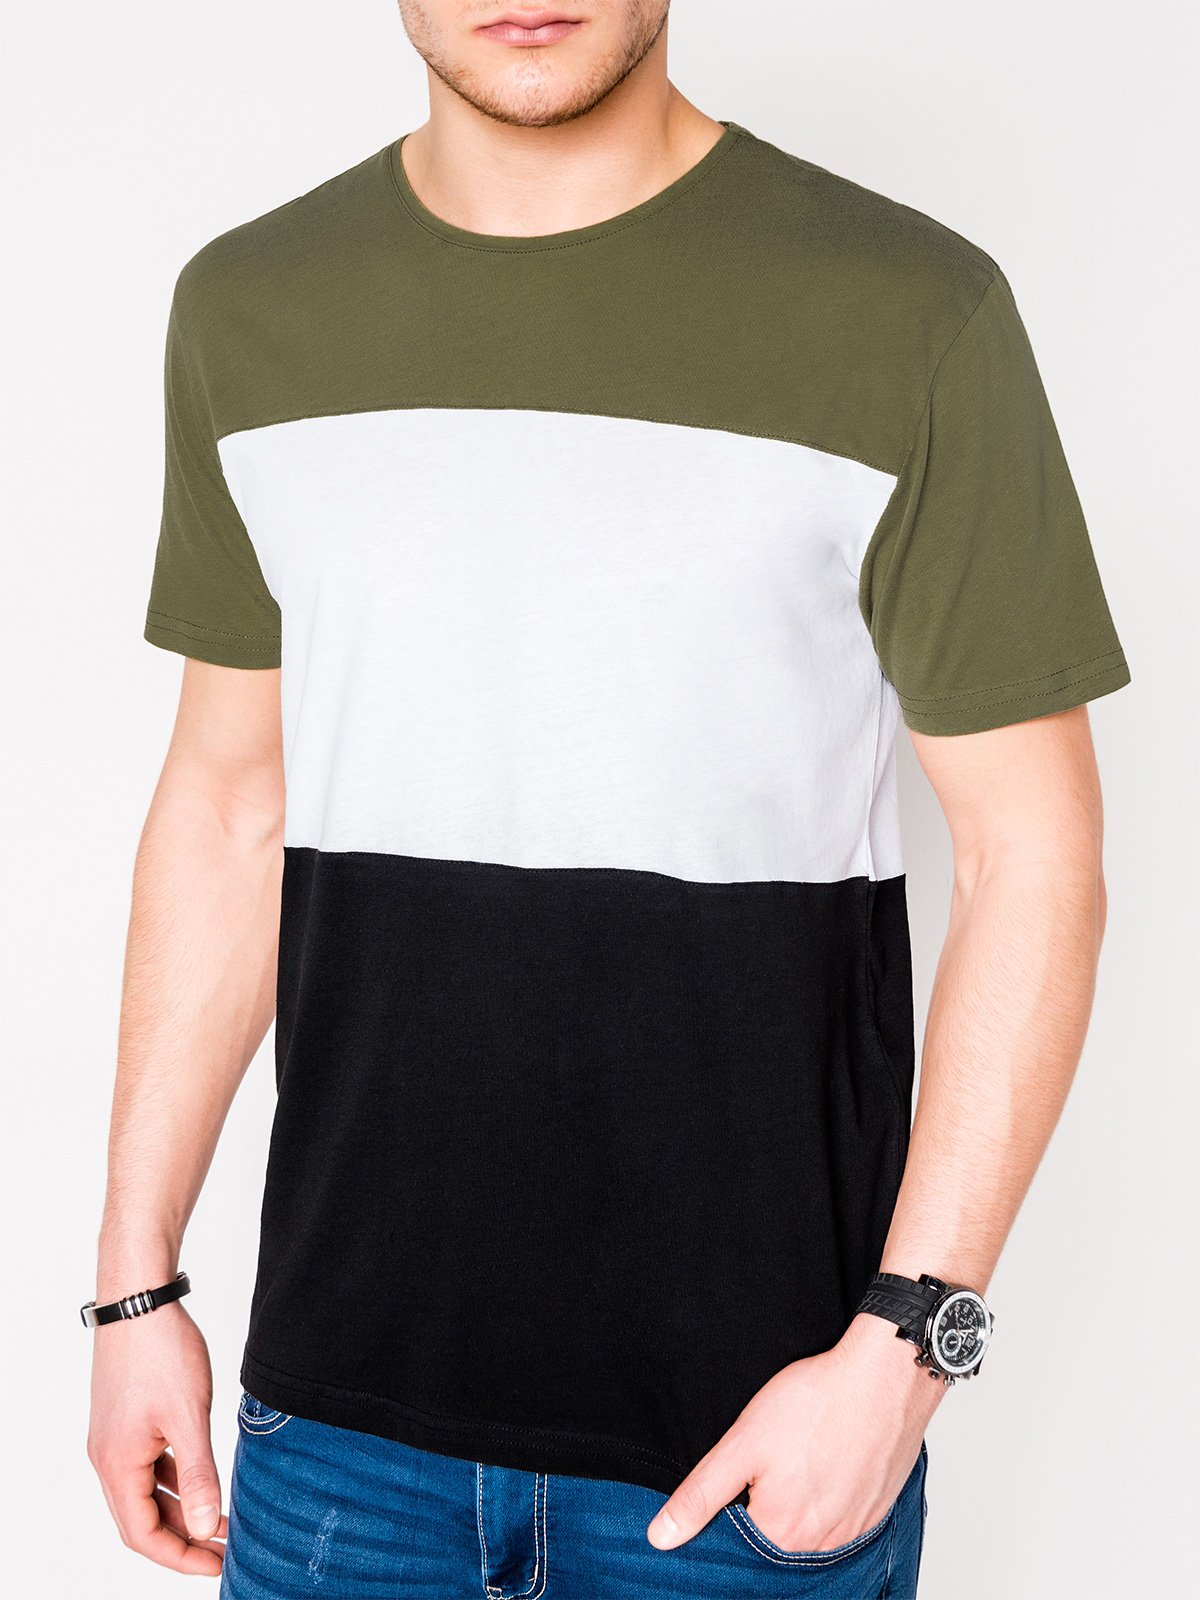 Men's plain t-shirt S1005 - khaki/black | MODONE wholesale - Clothing ...